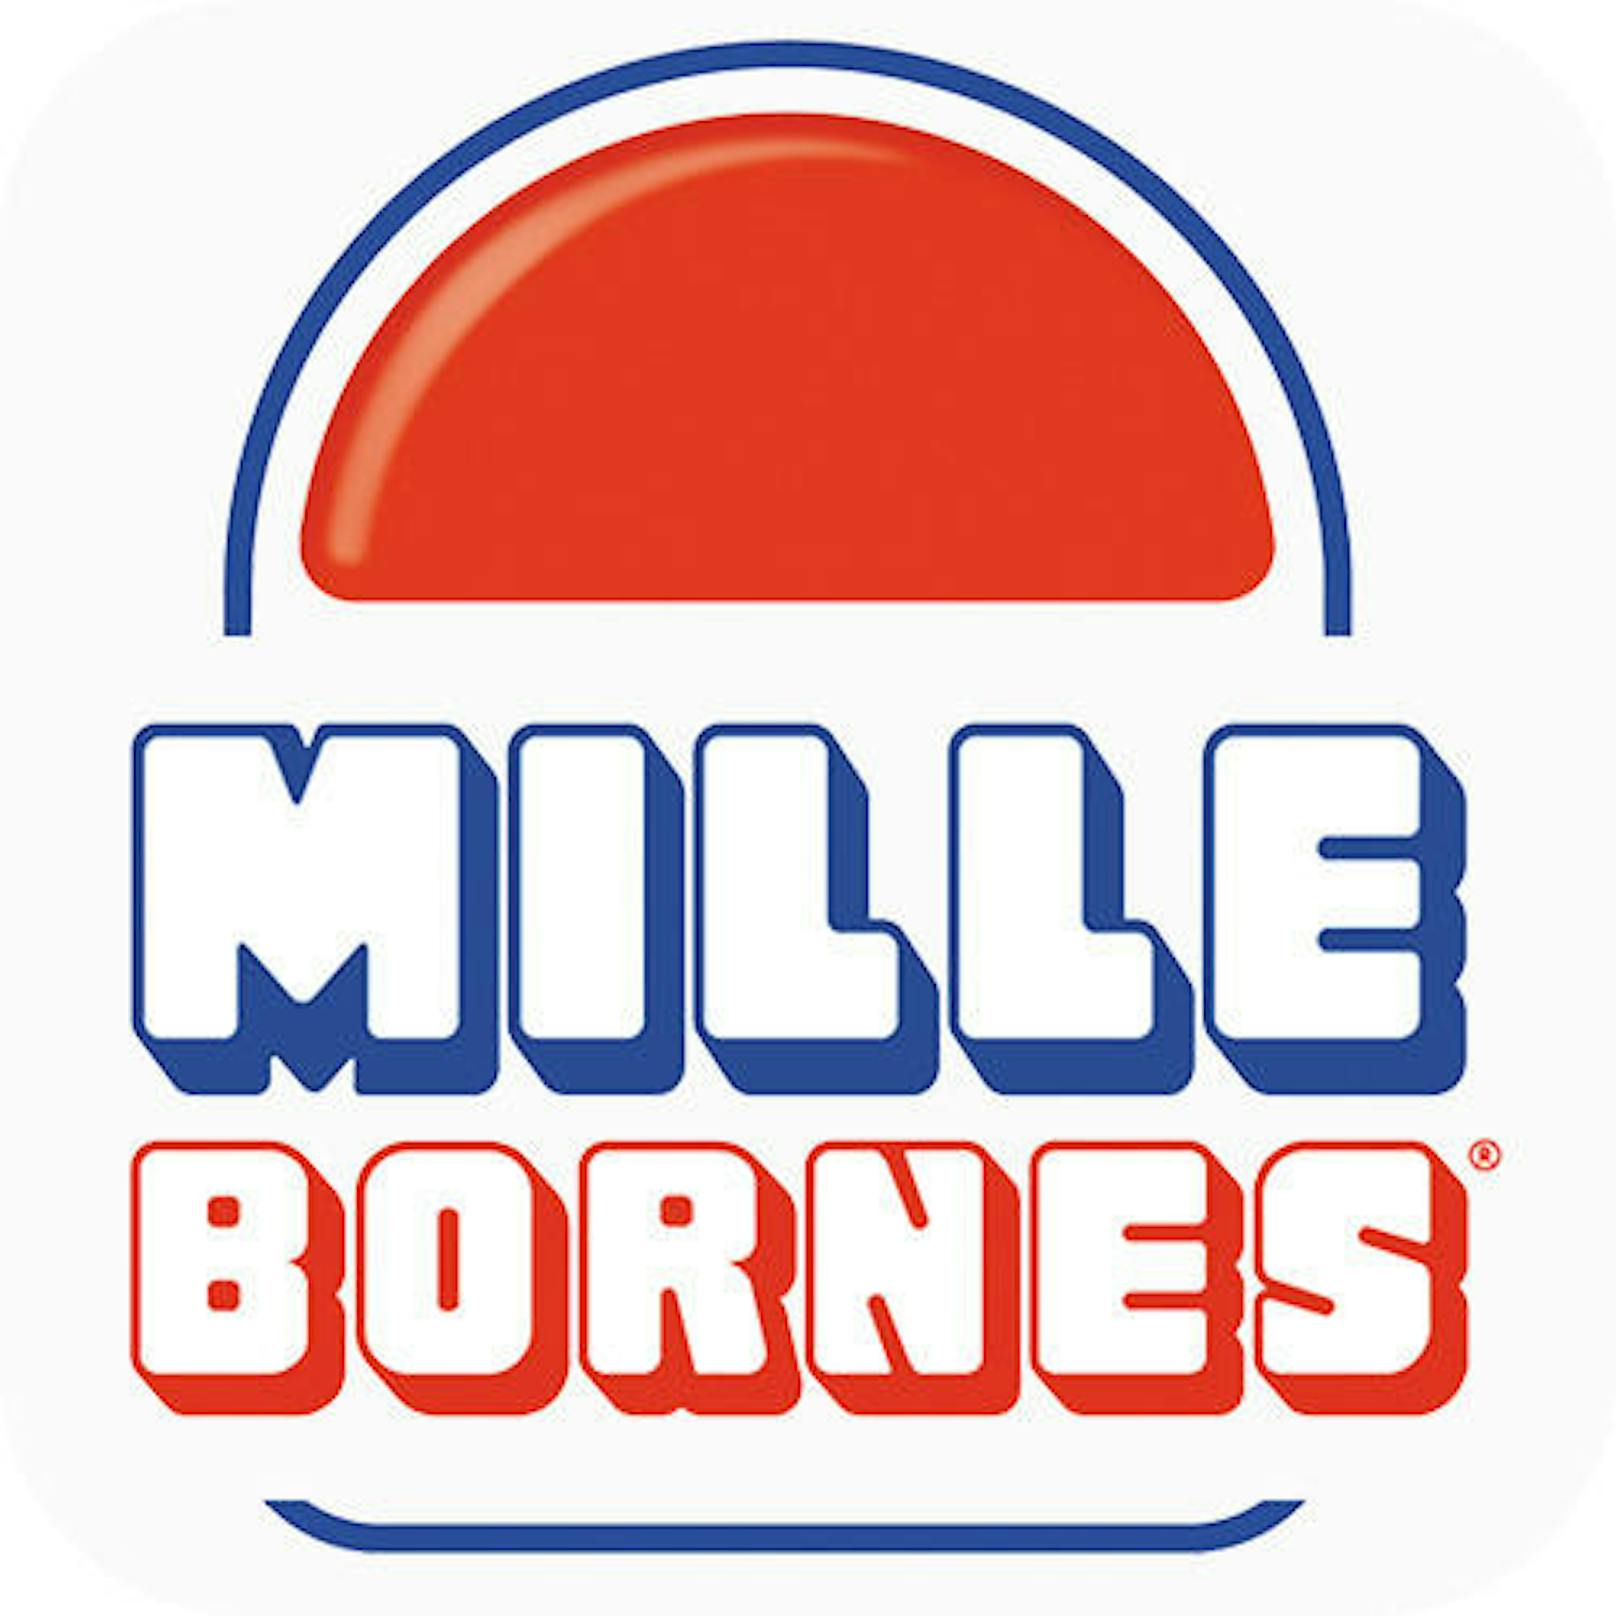 Mille Bornes (Asmodee North America) - PC via Steam, iOS und Android - erscheint im vierten Quartal 2017. In dieser Umsetzung des berühmten französischen Kartenspiels müssen Spieler 1000 Kilometer gegeneinander fahren und dabei verschiedenste Gefahren überstehen, um den Sieg davonzutragen.